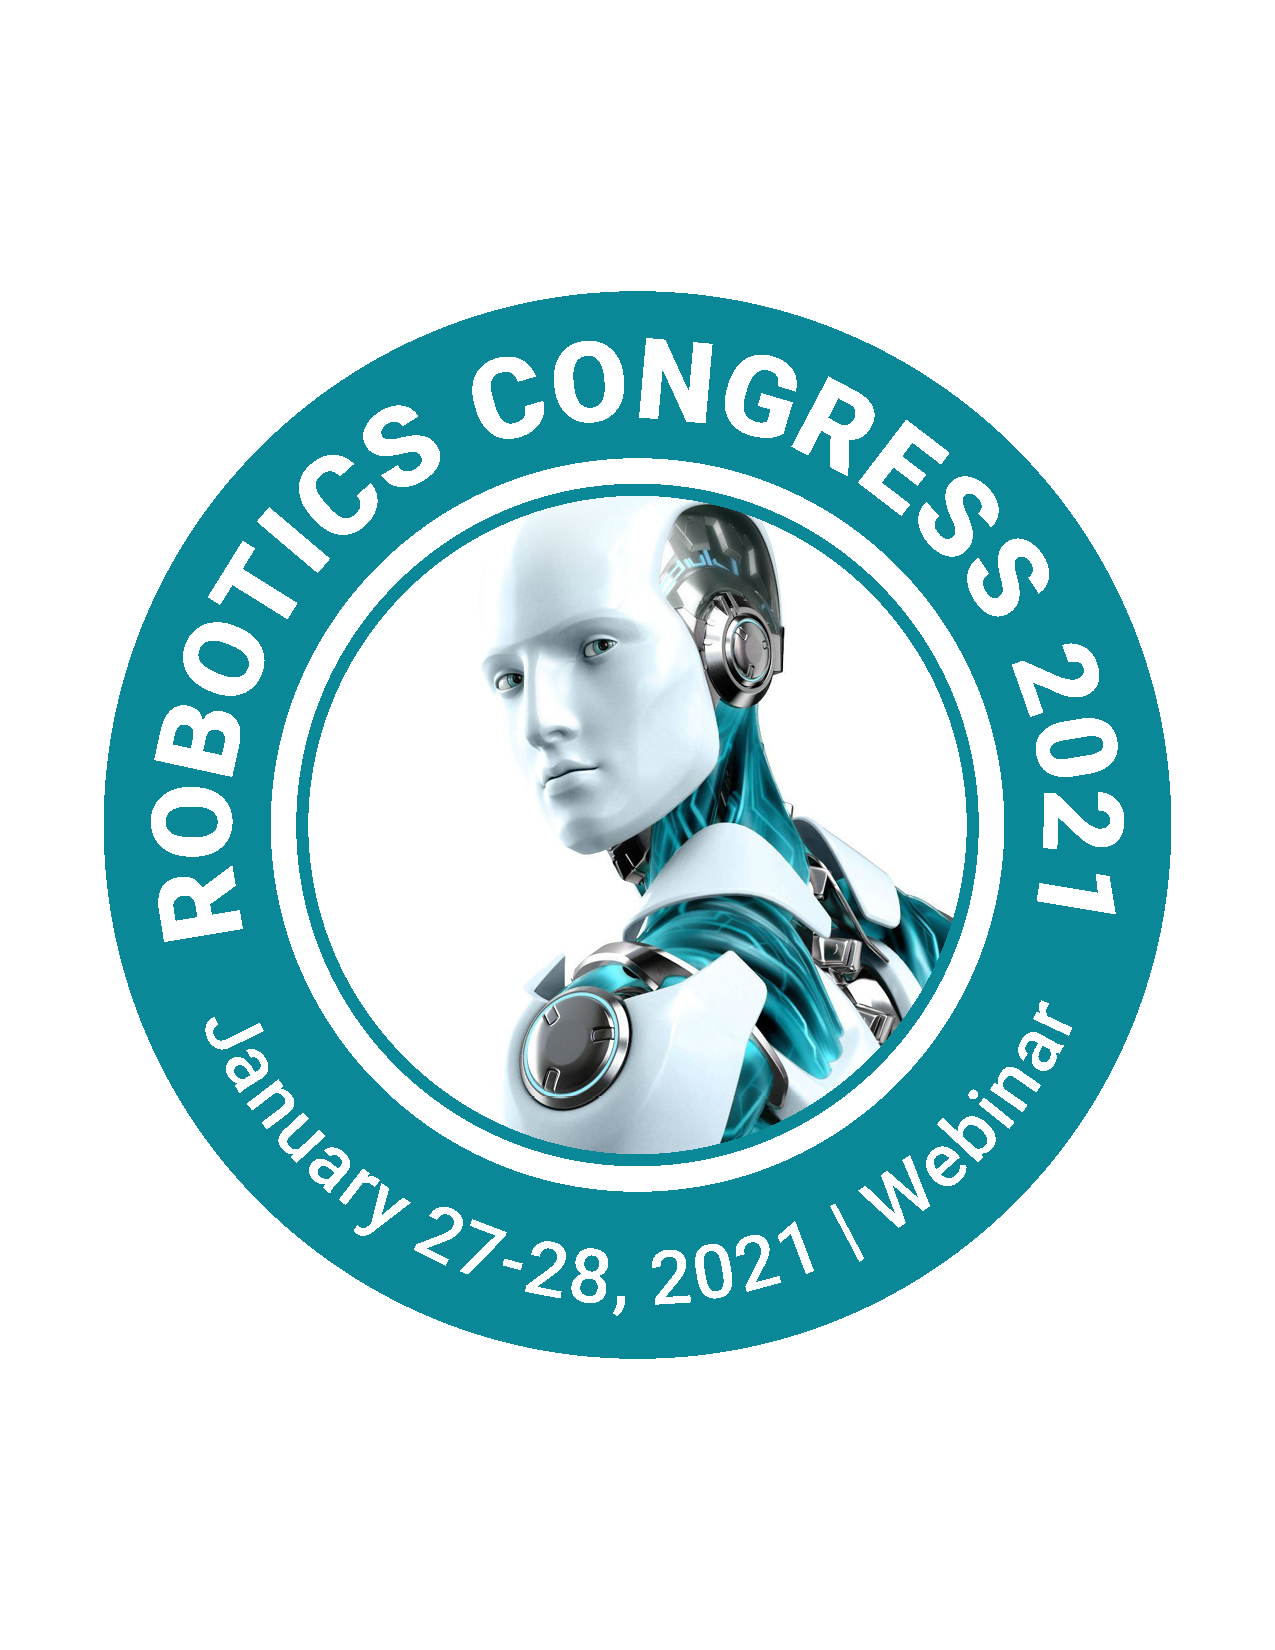 3rd World Summit on Robotics 2021